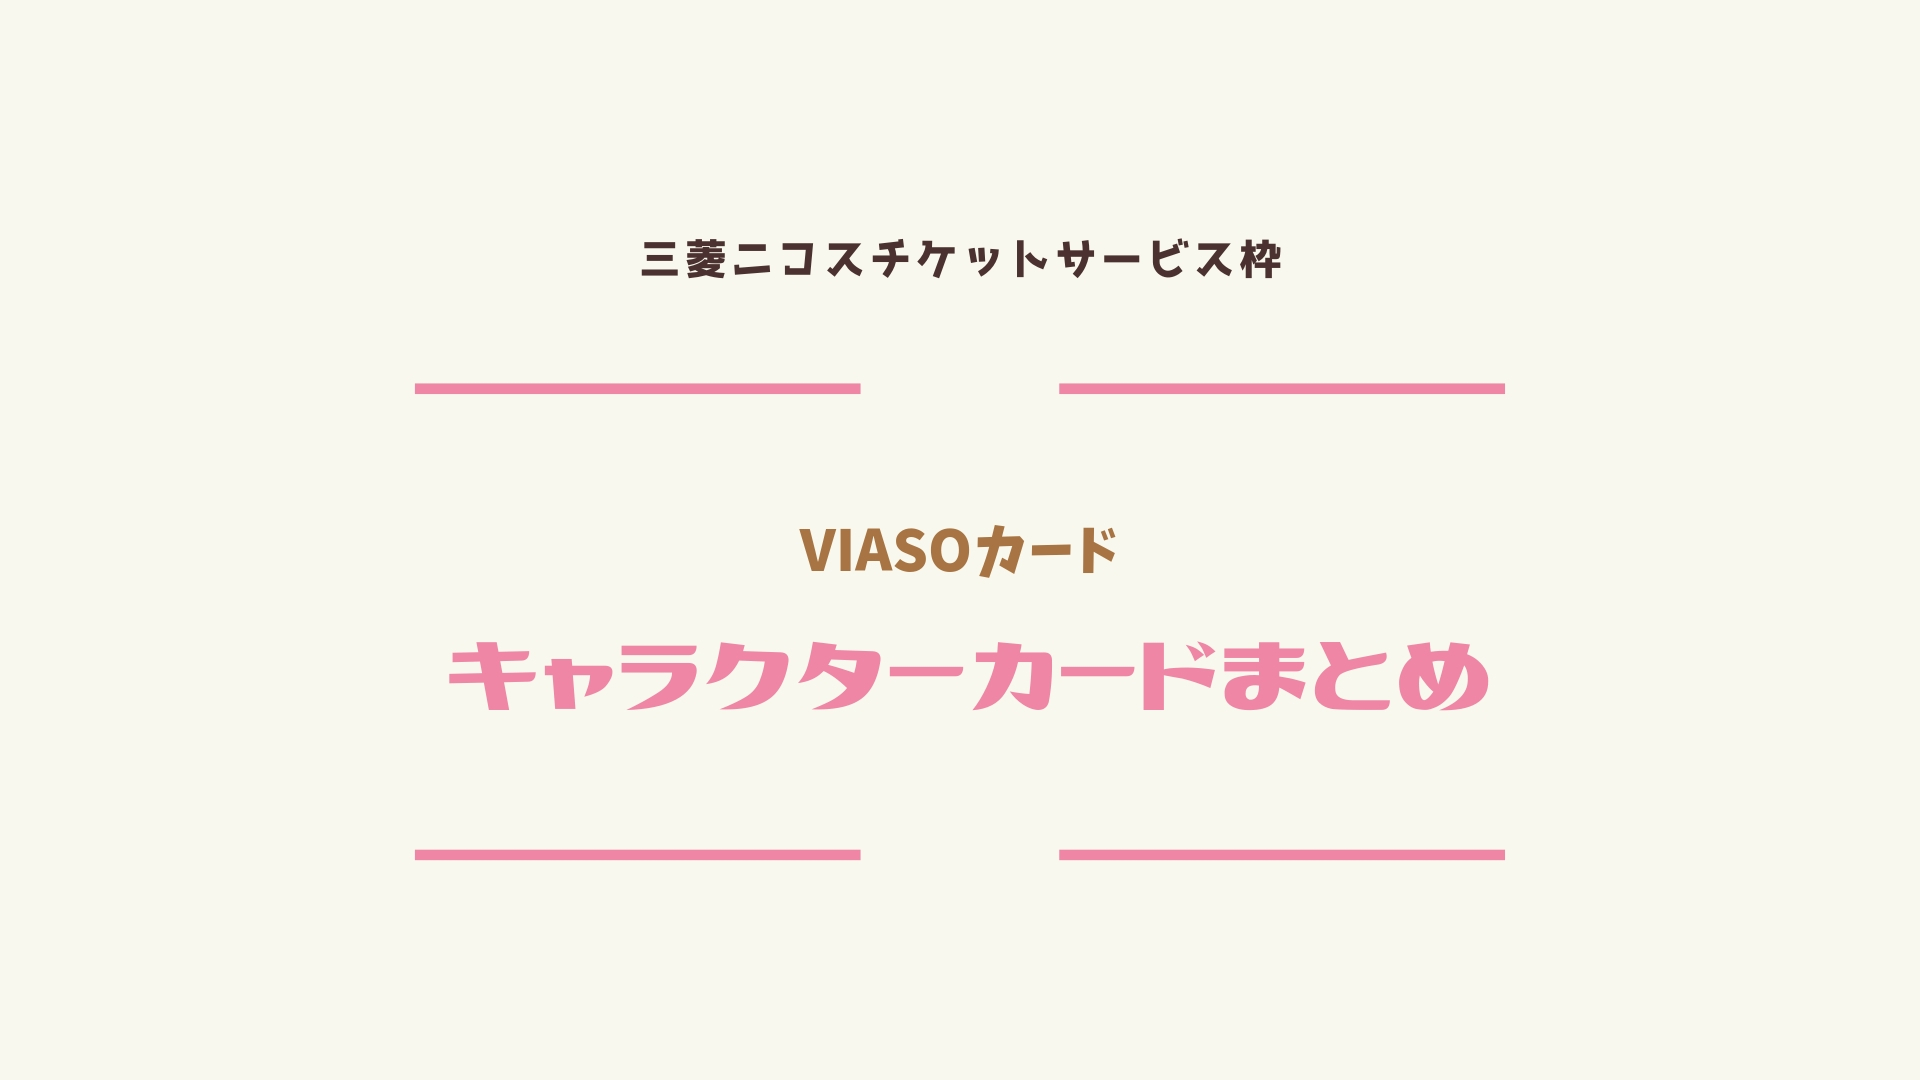 Viasoカードキャラクターカードの種類は 入会特典まとめ ジャニヲタのクレジットカードの選び方